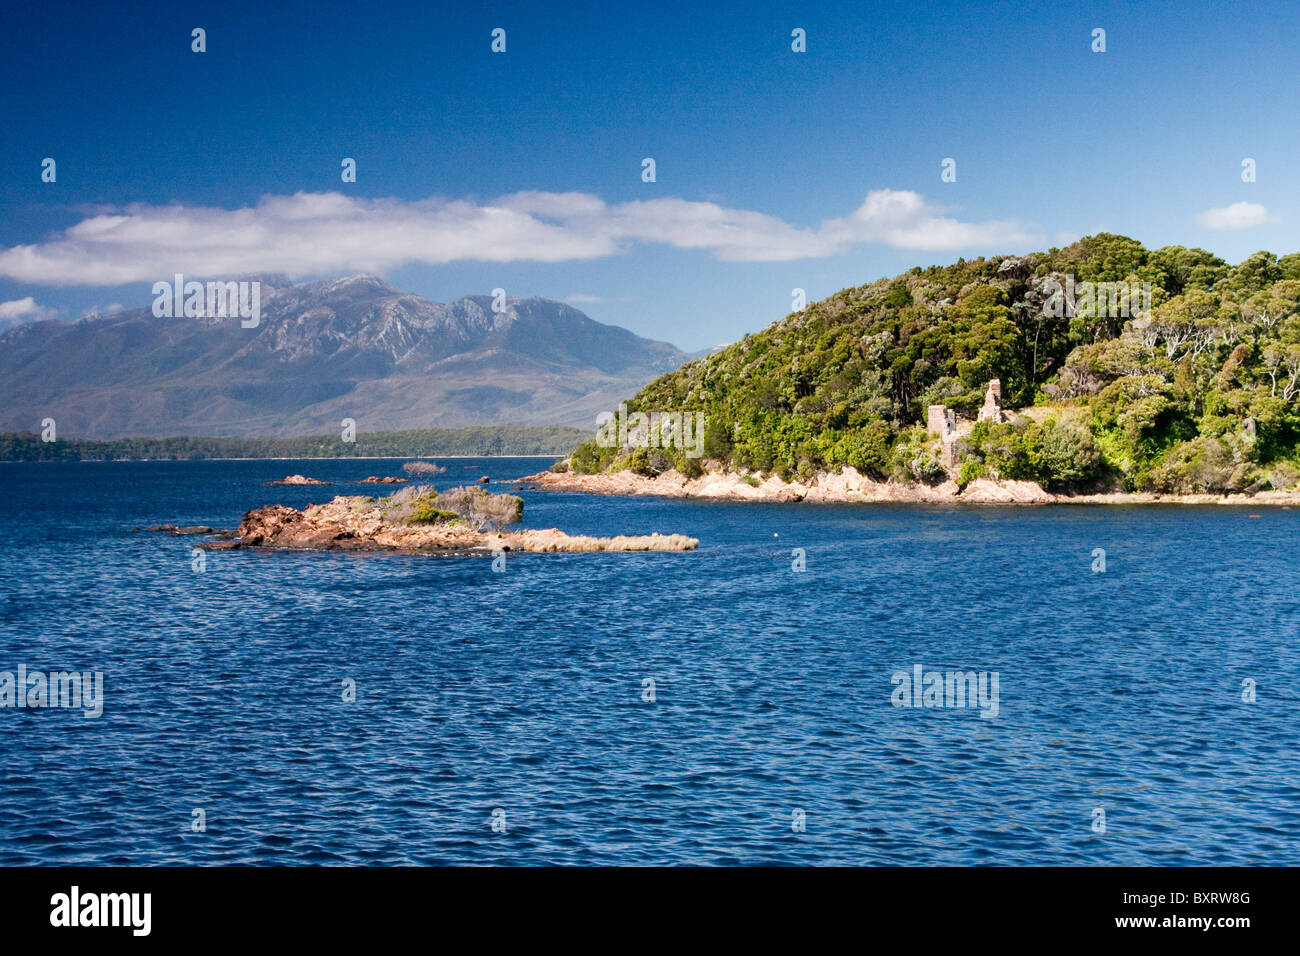 Australia, Tasmania, West Coast, Sarah Island, vista de la isla Foto de stock